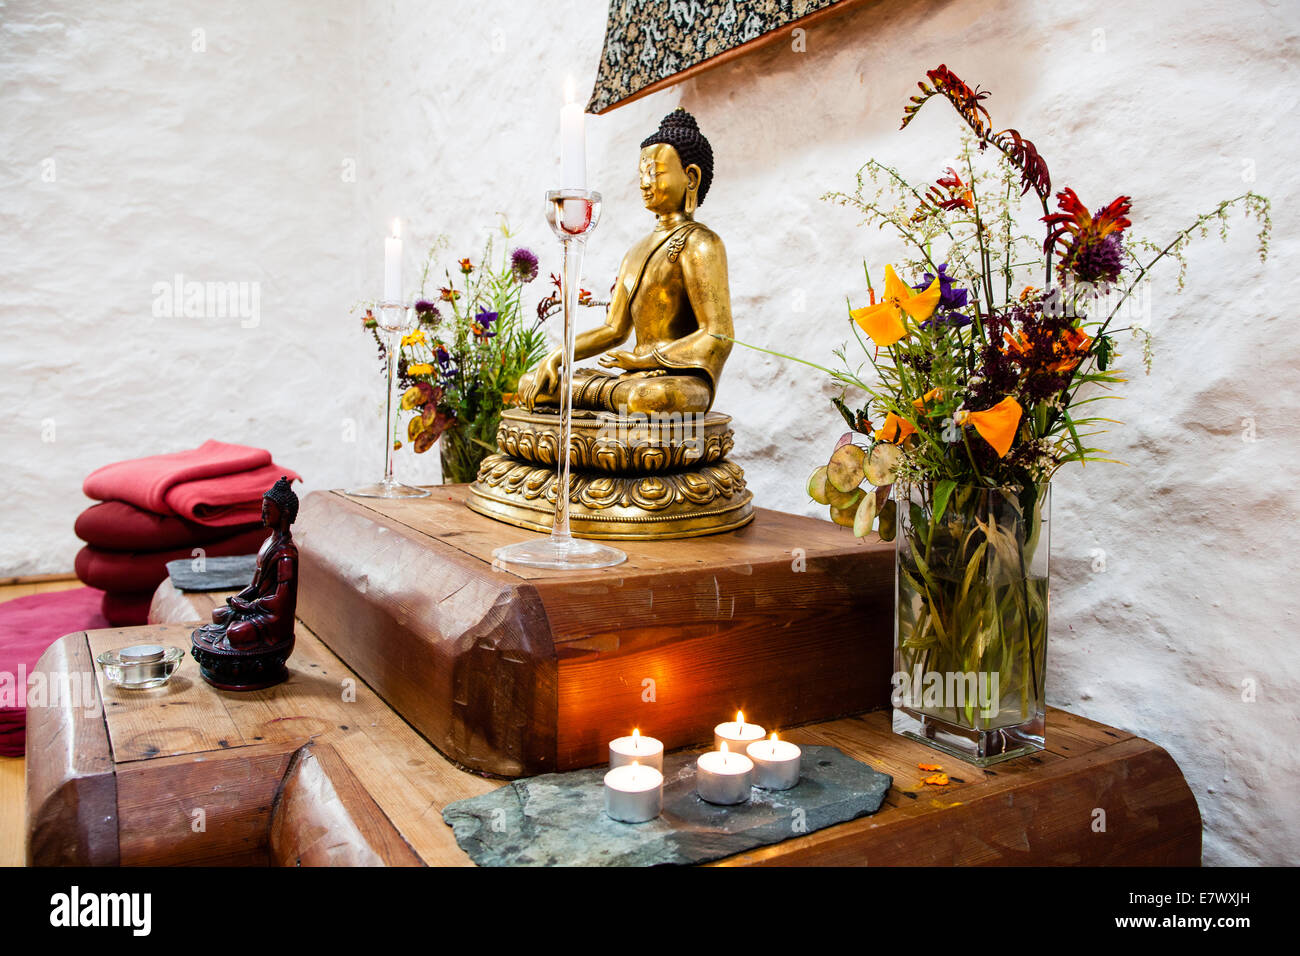 santuario budista con el Buda meditando, velas, ofrendas florales Fotografía de stock - Alamy